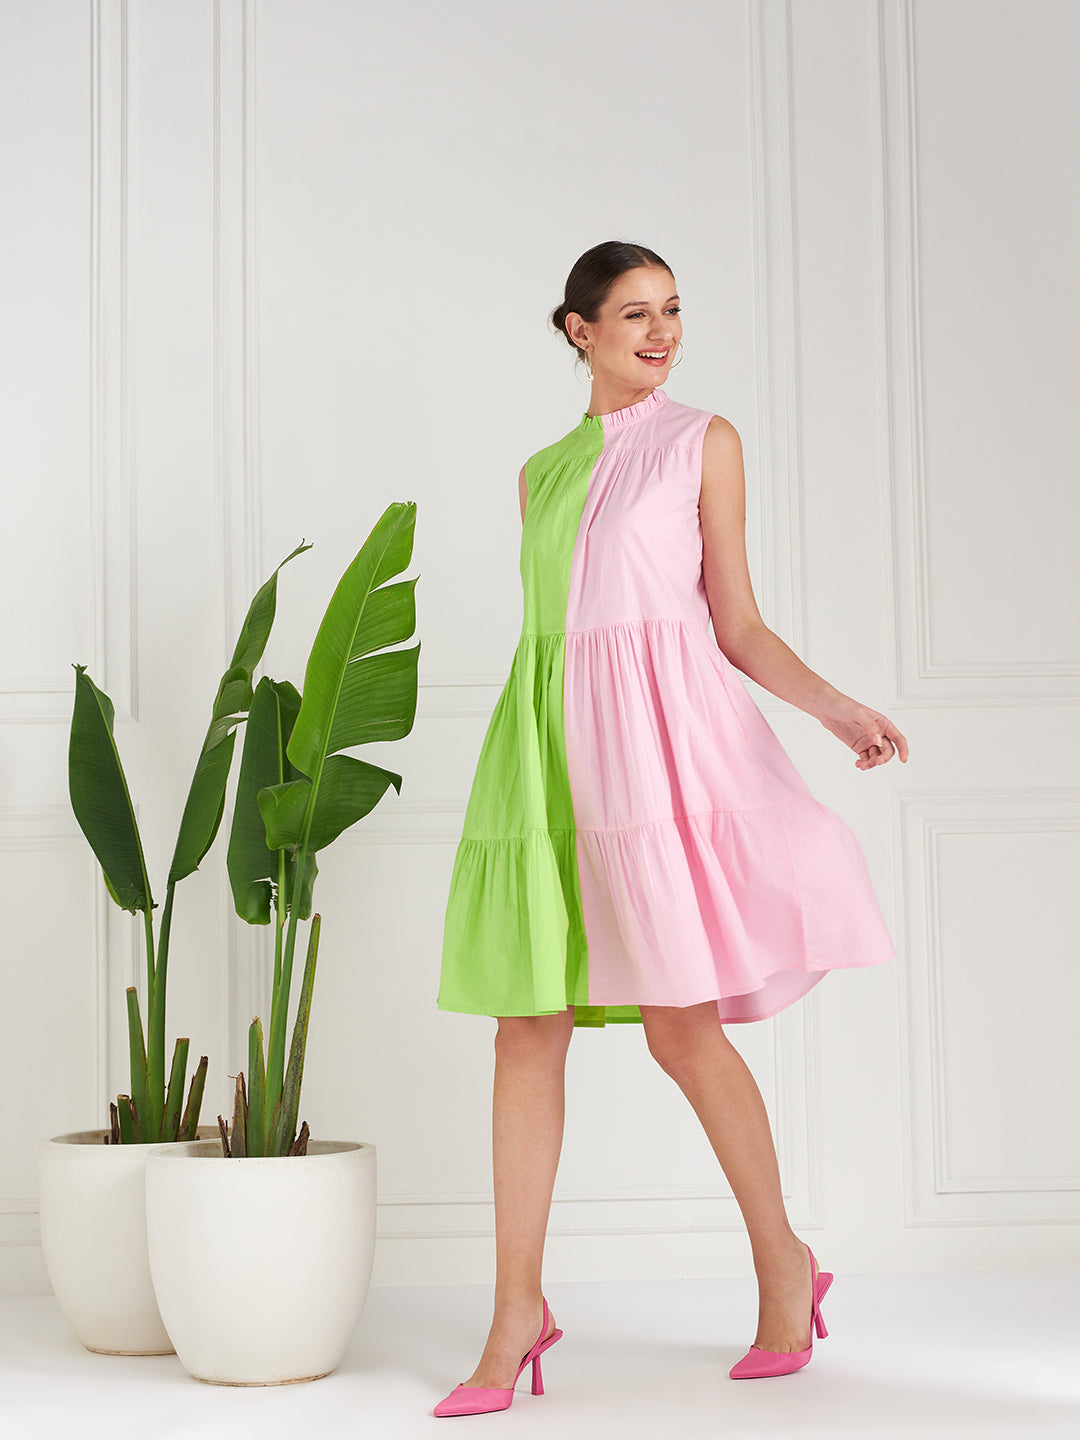 Athena Green Colourblocked Tiered A-Line Cotton Dress - Athena Lifestyle